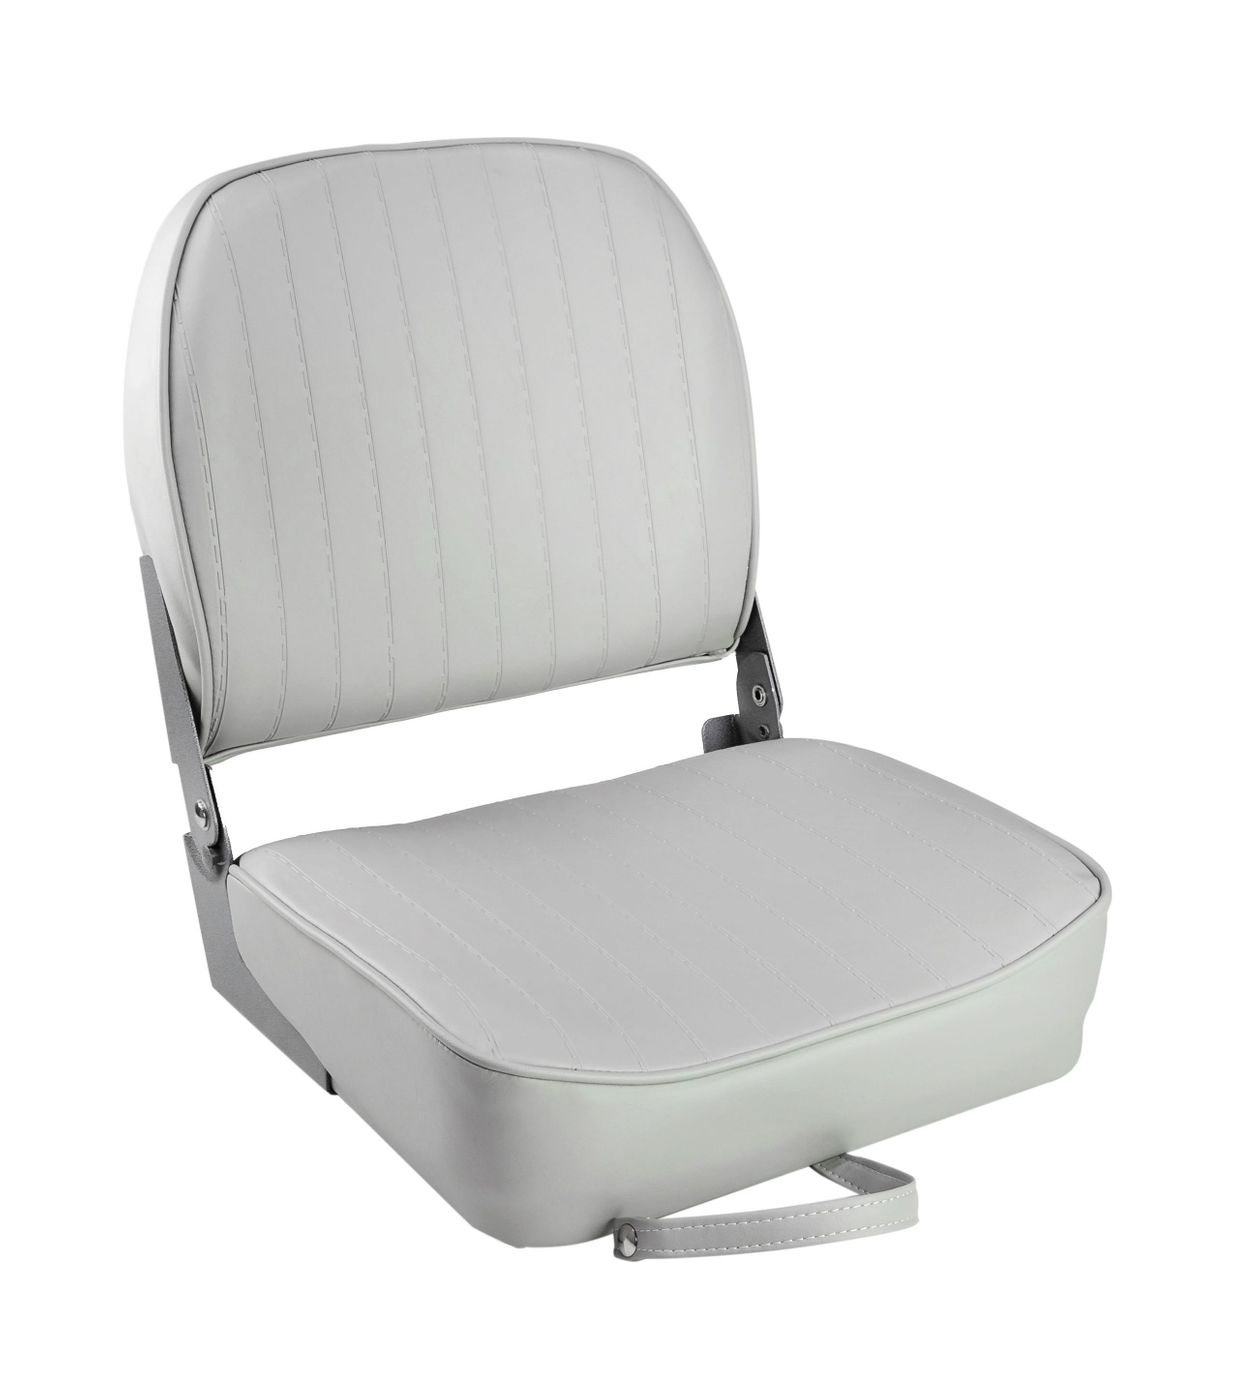 Кресло складное мягкое ECONOMY с низкой спинкой, цвет серый 1040623 кресло складное мягкое skipper серый красный 1061018